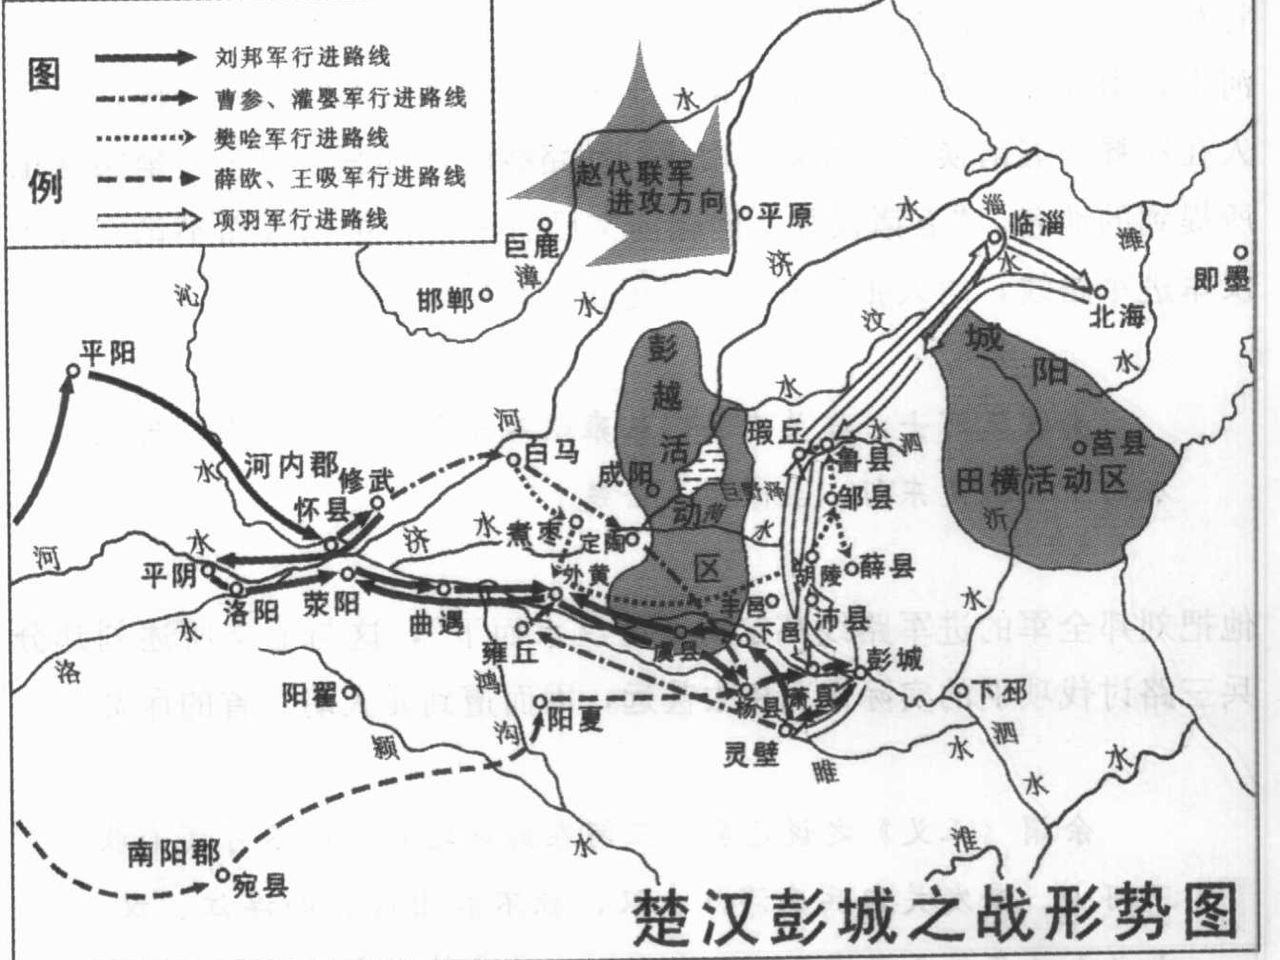 彭城之戰形勢圖